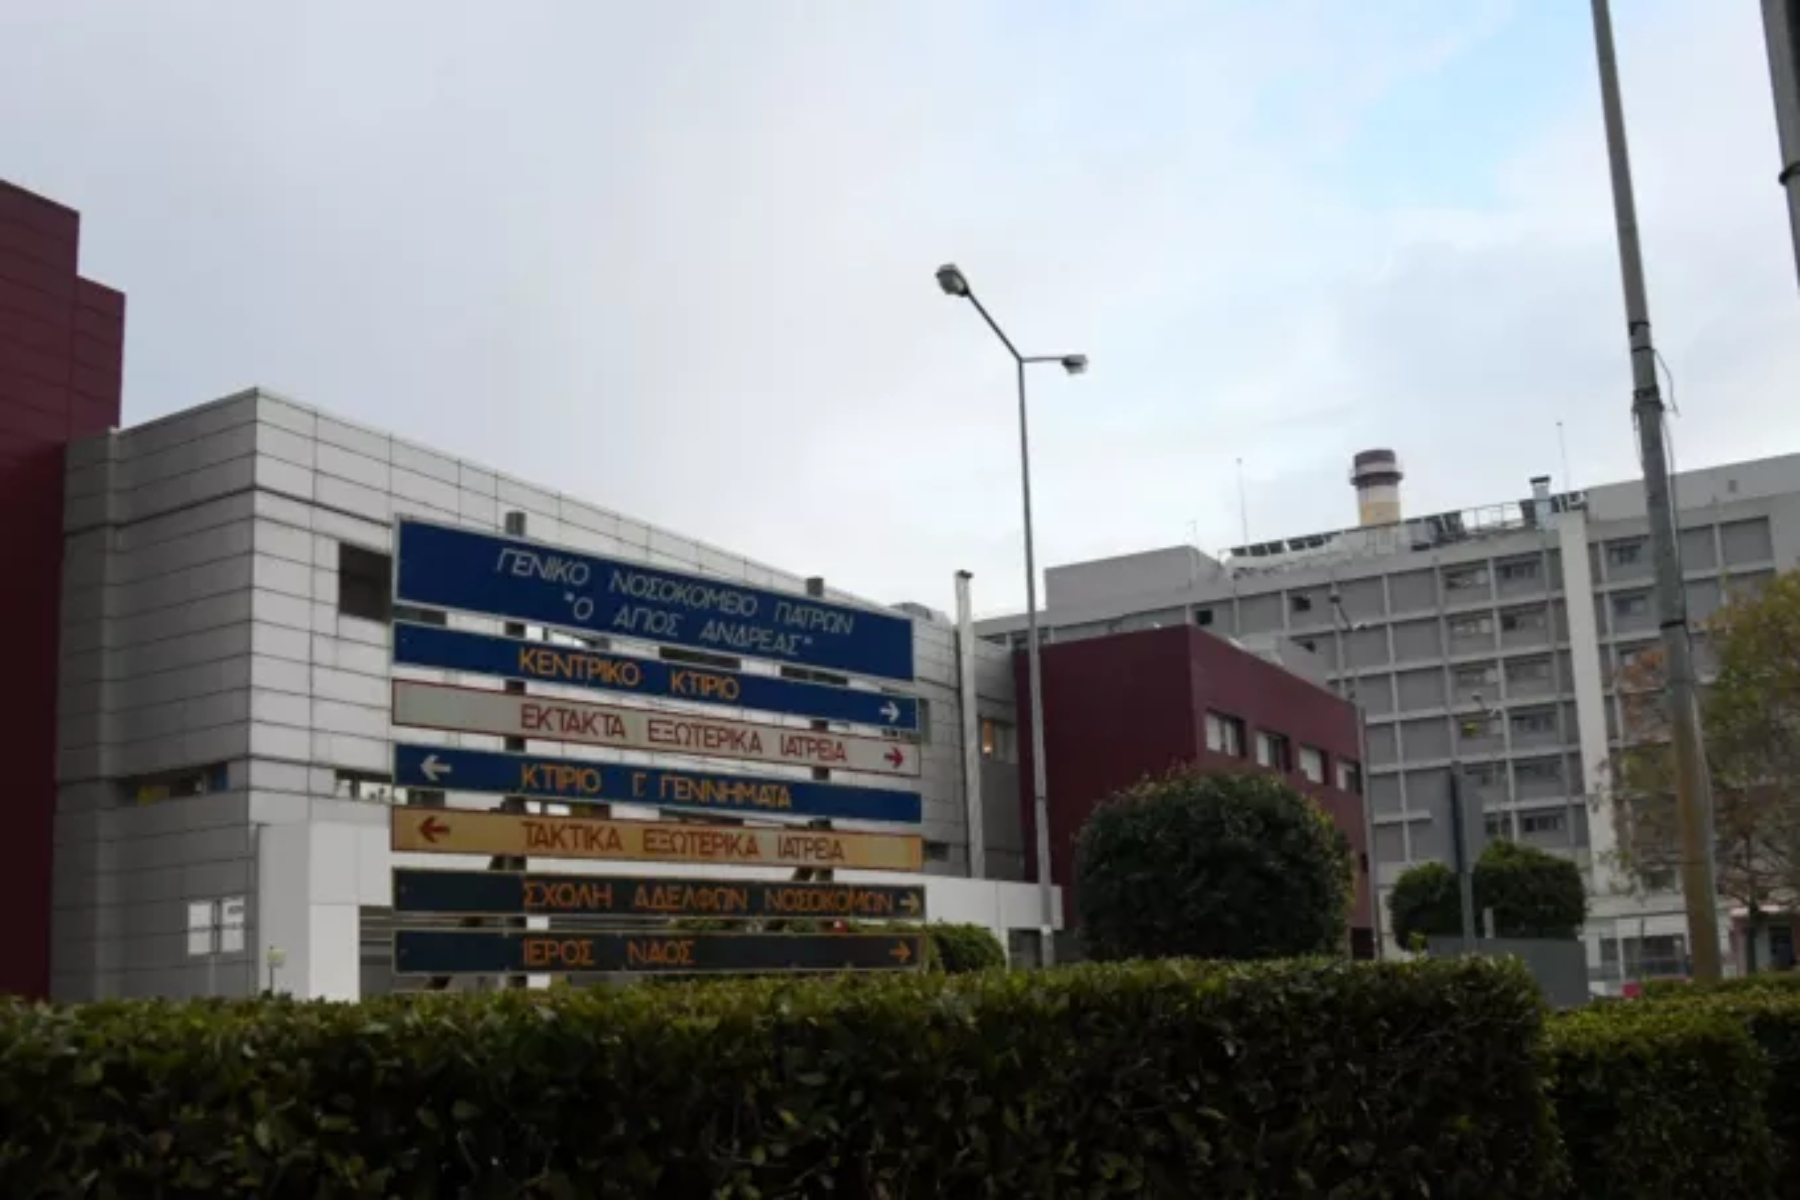 Πλεύρης: Κατεπείγουσα έρευνα για τον 49χρονο που κατέληξε έξω από το νοσοκομείο της Πάτρας “Άγιος Ανδρέας”